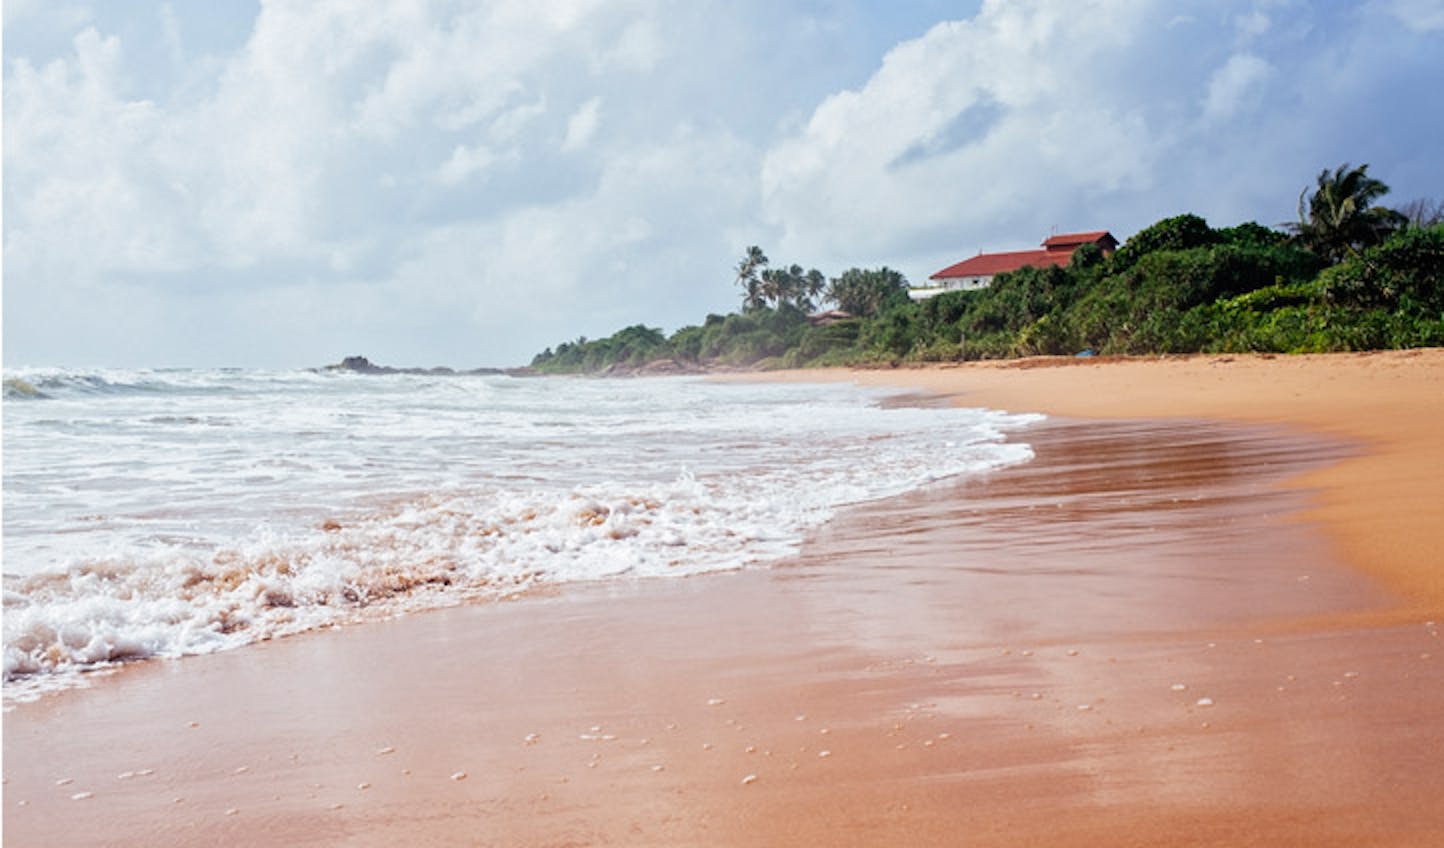 The golden sands of Sri Lanka